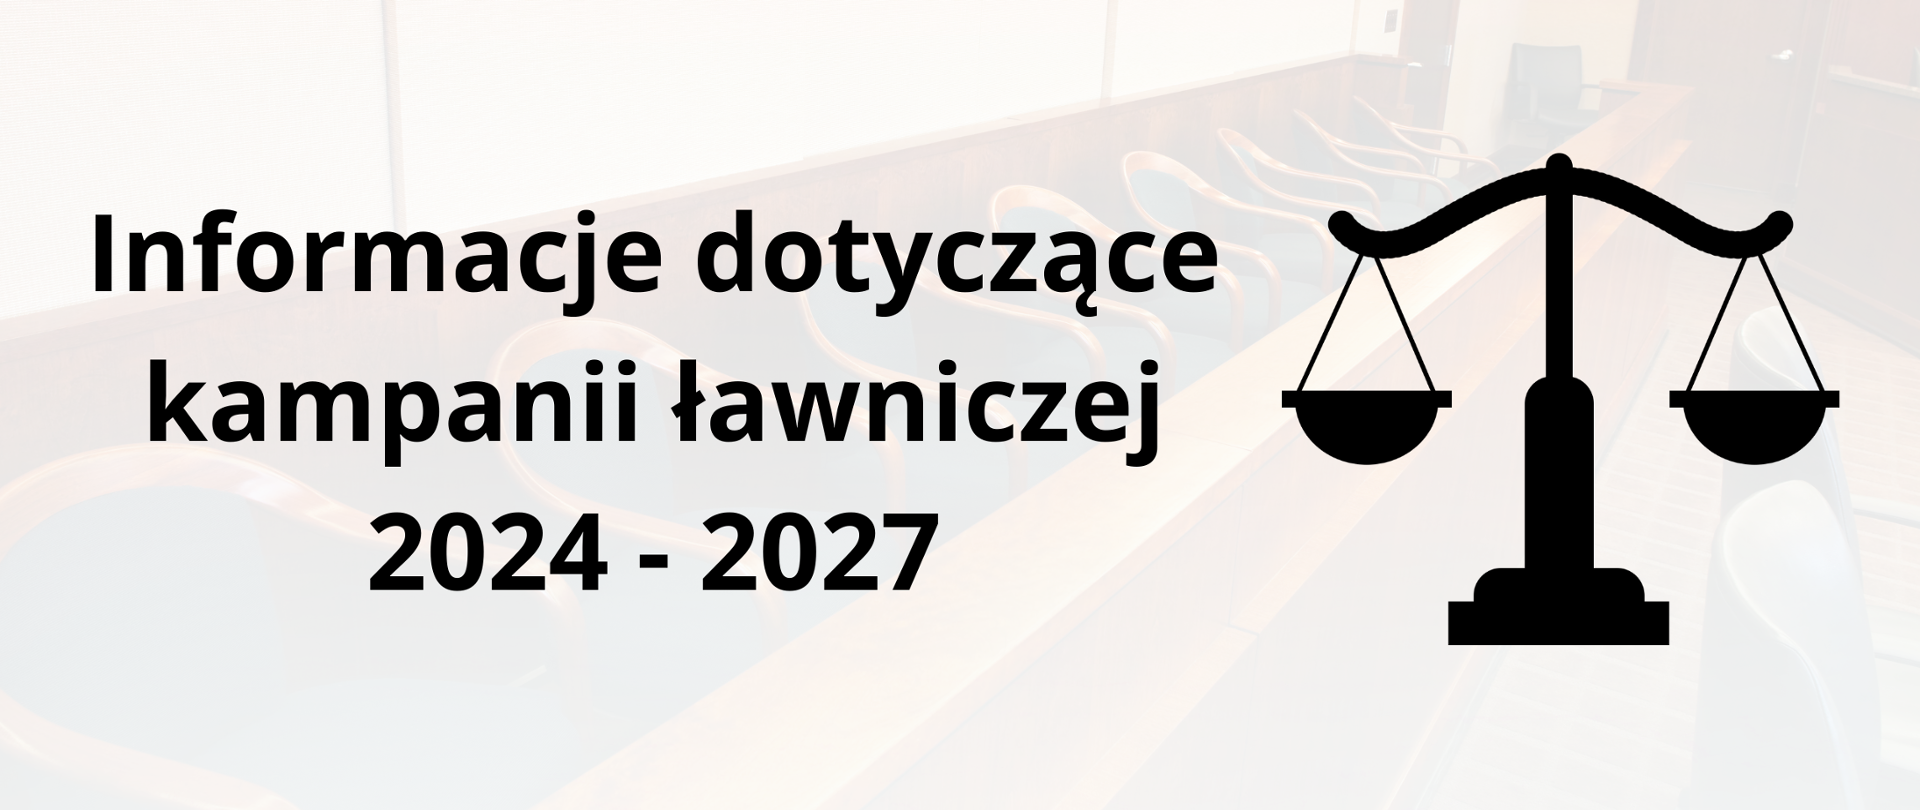 Tekst: "Informacje dotyczące kampanii ławniczej 2024-2027" obok waga - symbol sądownictwa. W tle sala sądowa.